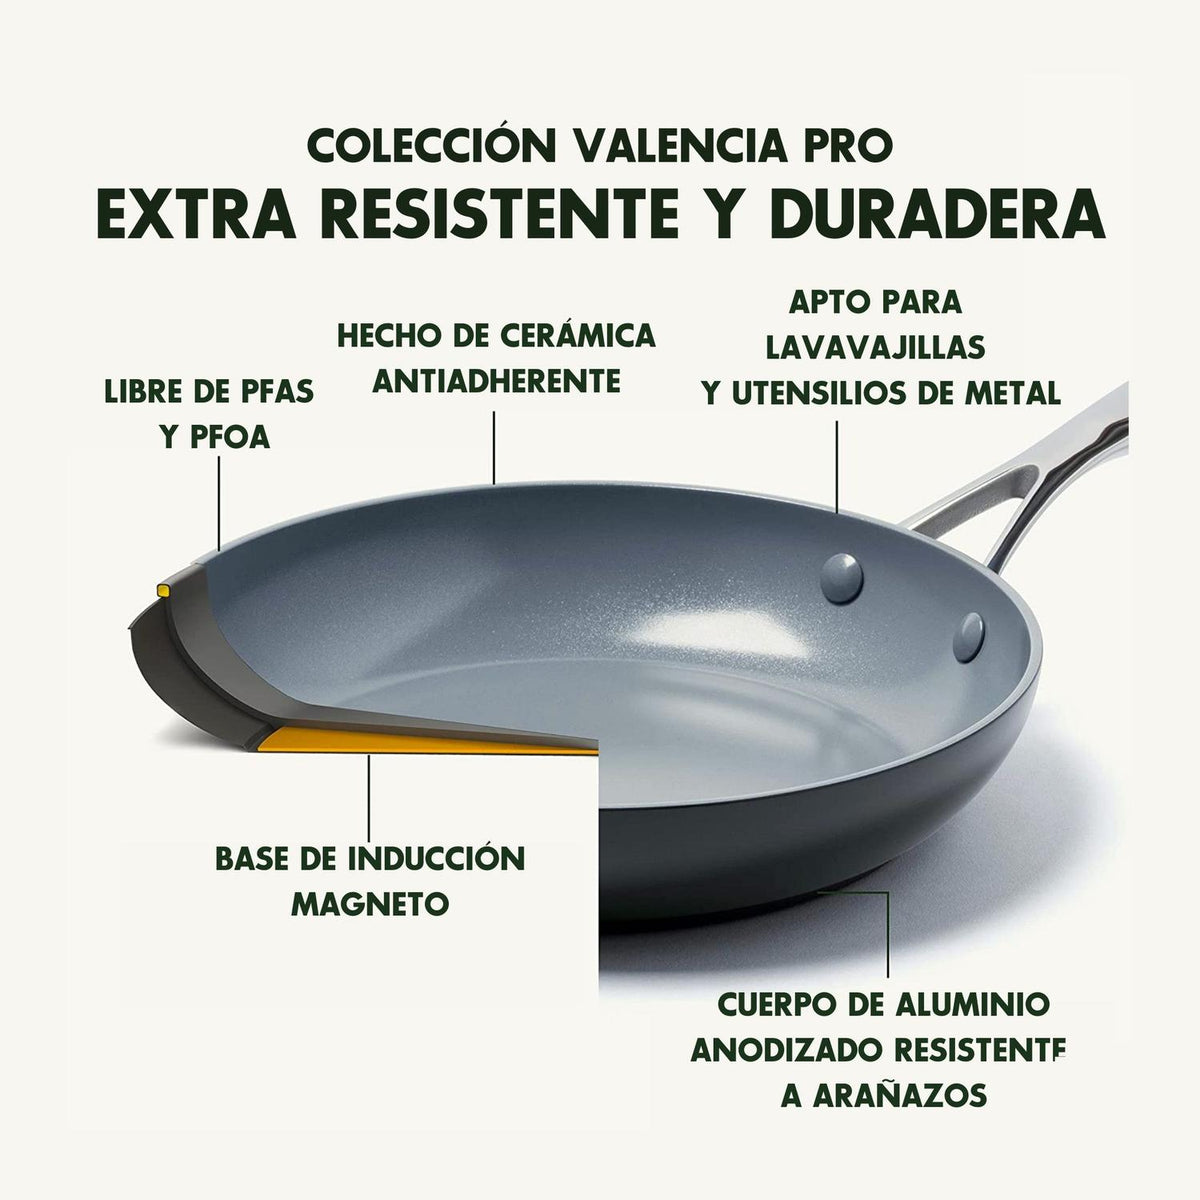 GreenPan Juego De Sartenes Juego de Sartenes Valencia Pro de Cerámica Antiadherente 26/30cm 2 Piezas - vertikal